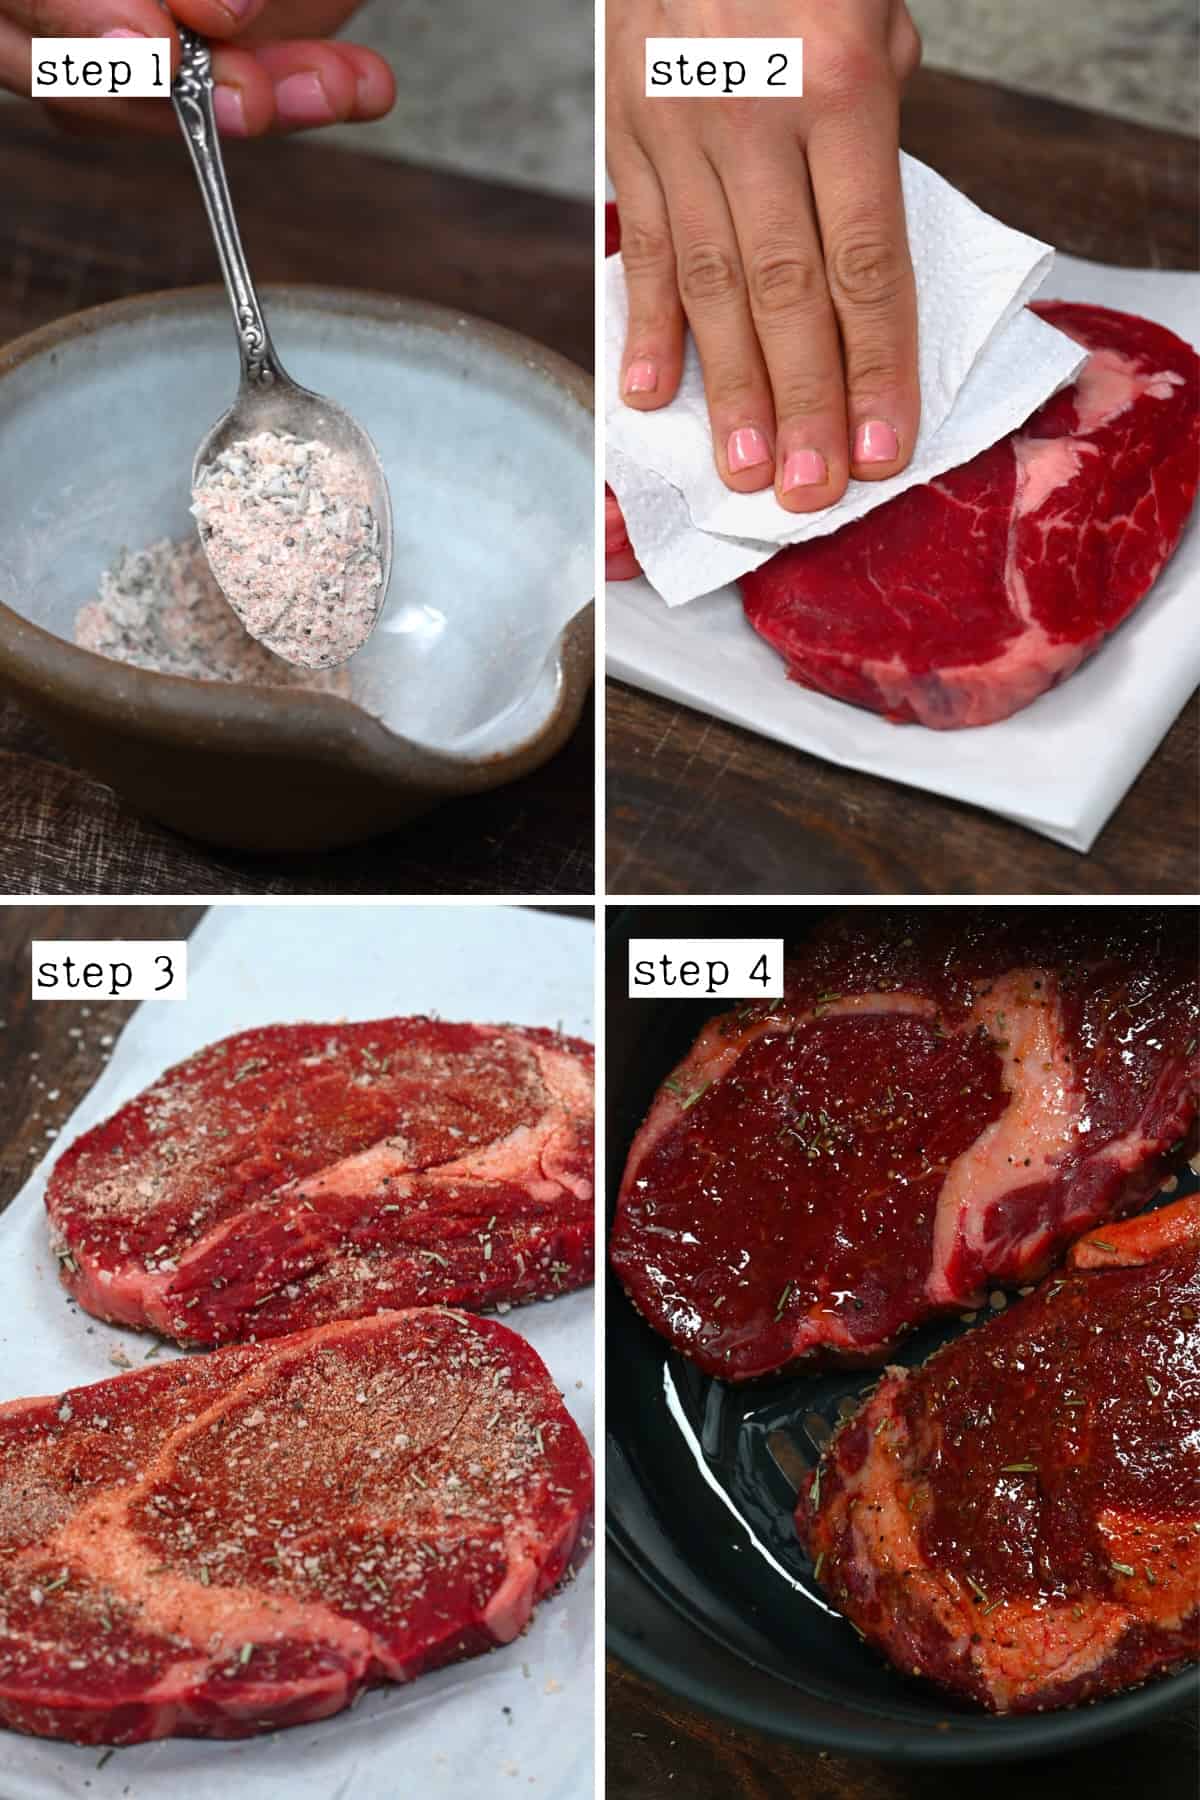 Steps for preparing steak for air frying